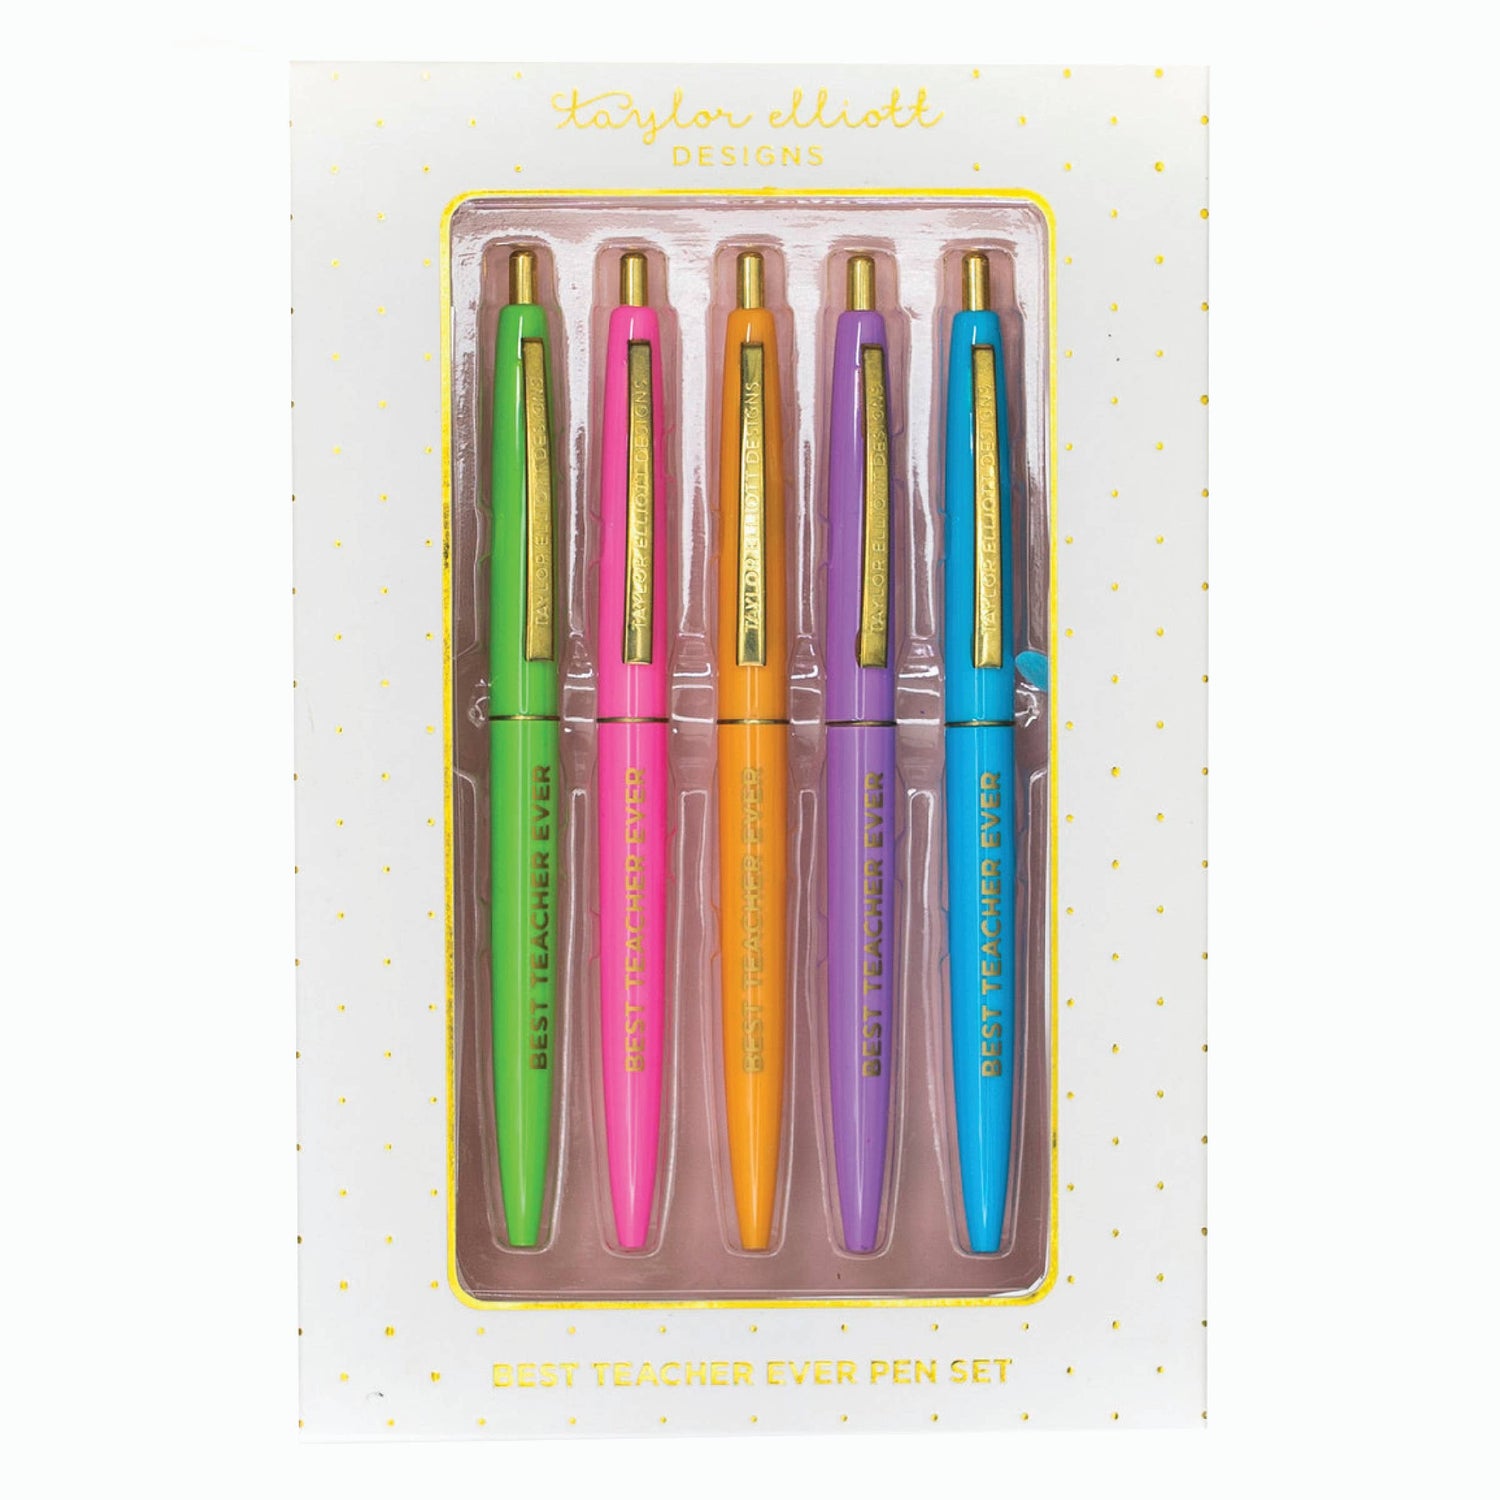 Best Teacher Ever Pen Kit